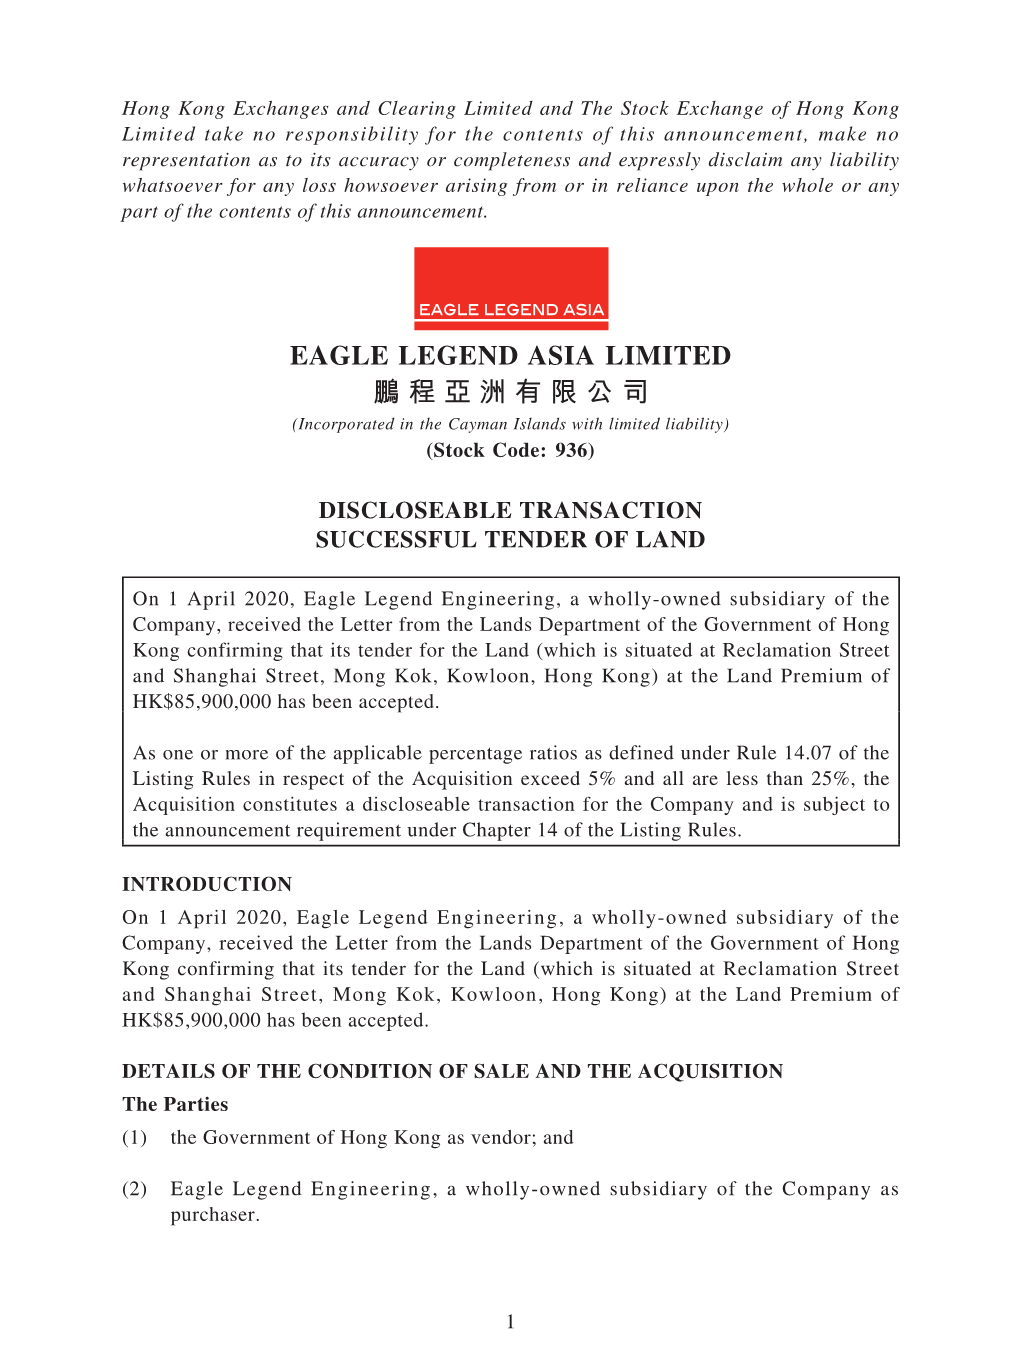 Eagle Legend Asia Limited 鵬程亞洲有限公司